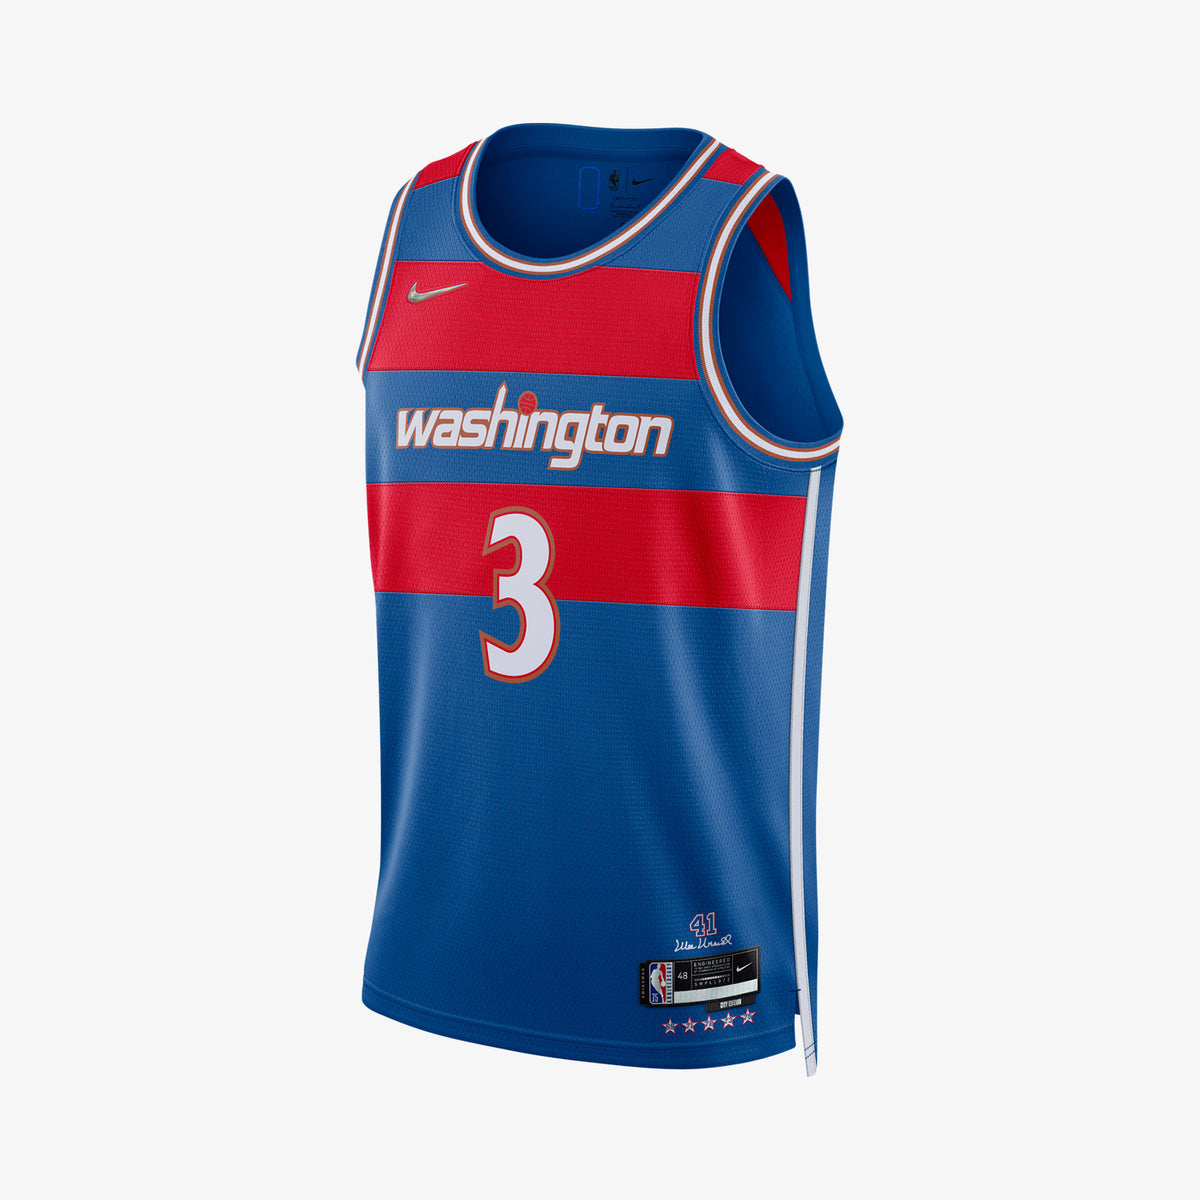 Washington Wizards Michael Jordan Blue Black Throwback Jersey